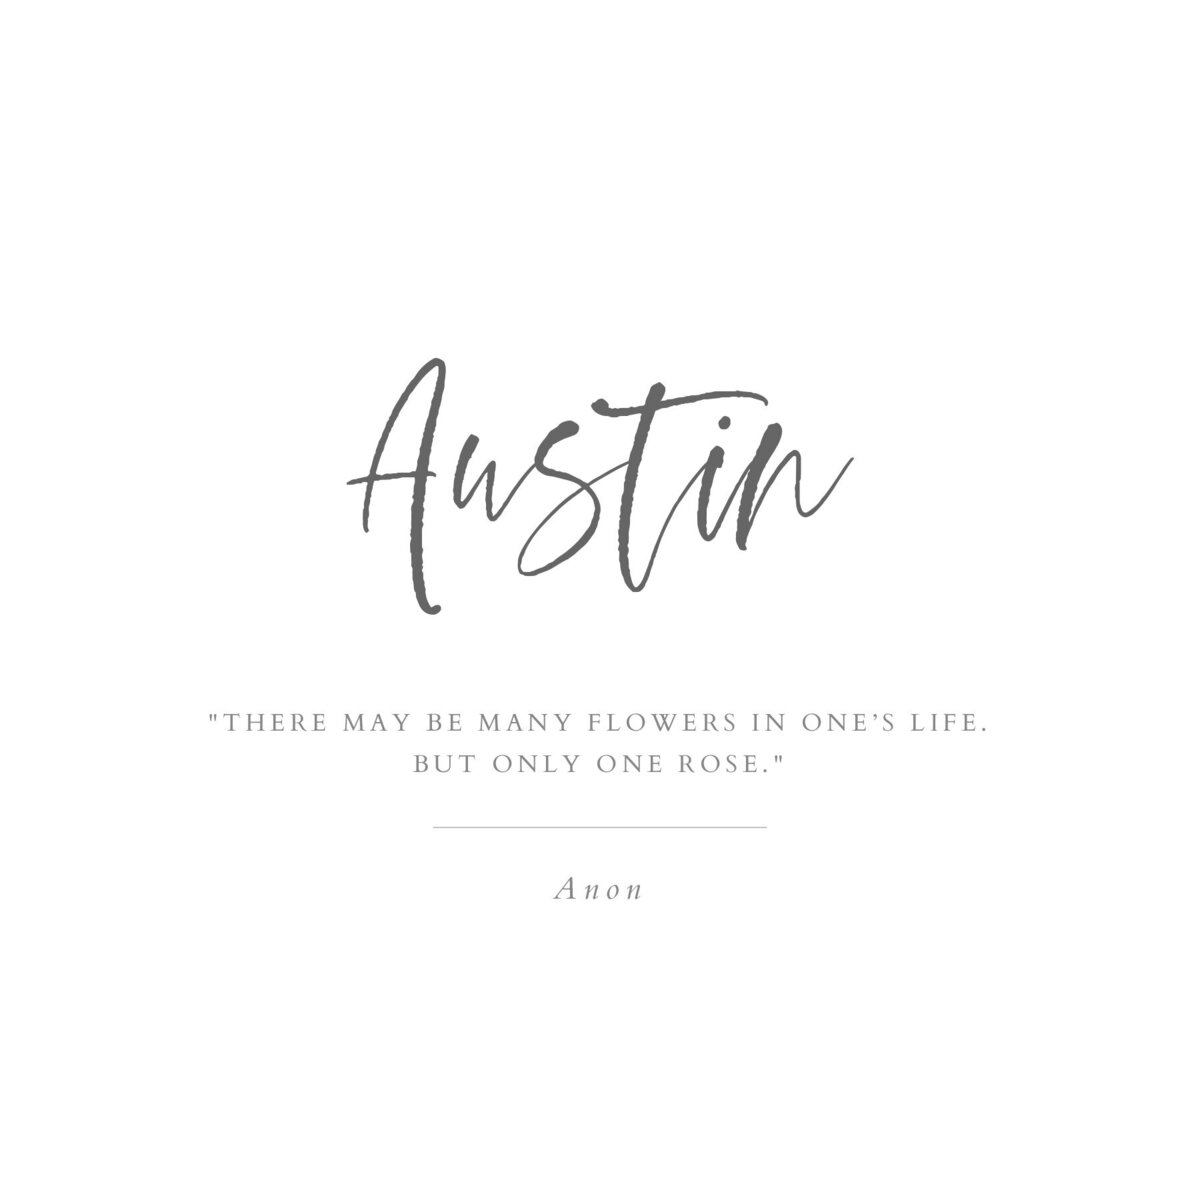 Austin_Title Page